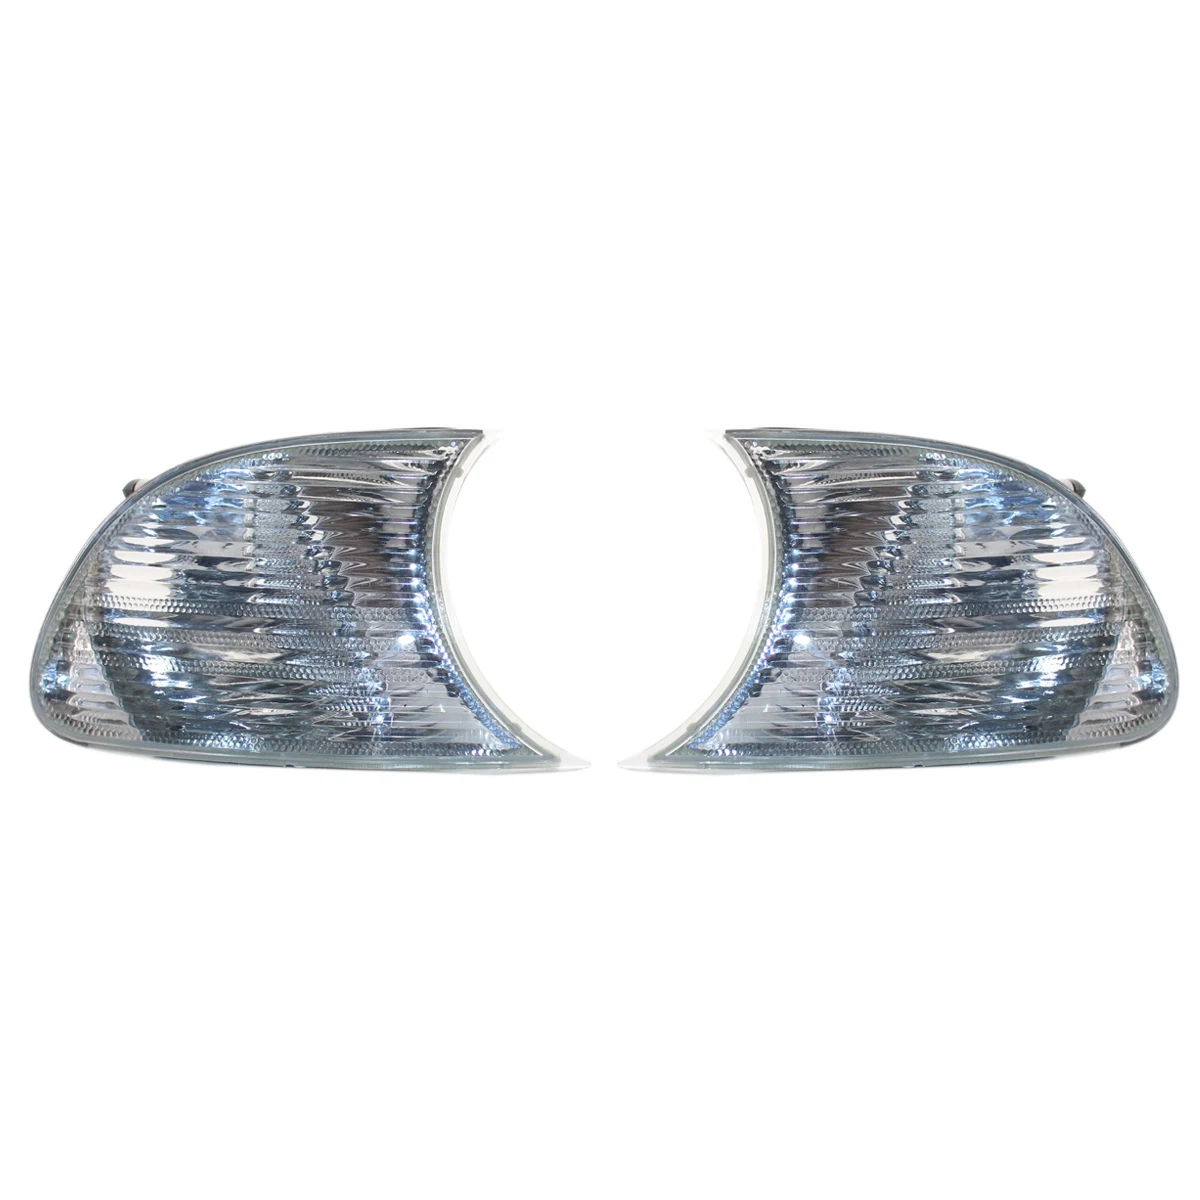 

Прозрачные габаритные огни для углов парковочная лампа для купе серии E46 3 1999-2001 63126904307